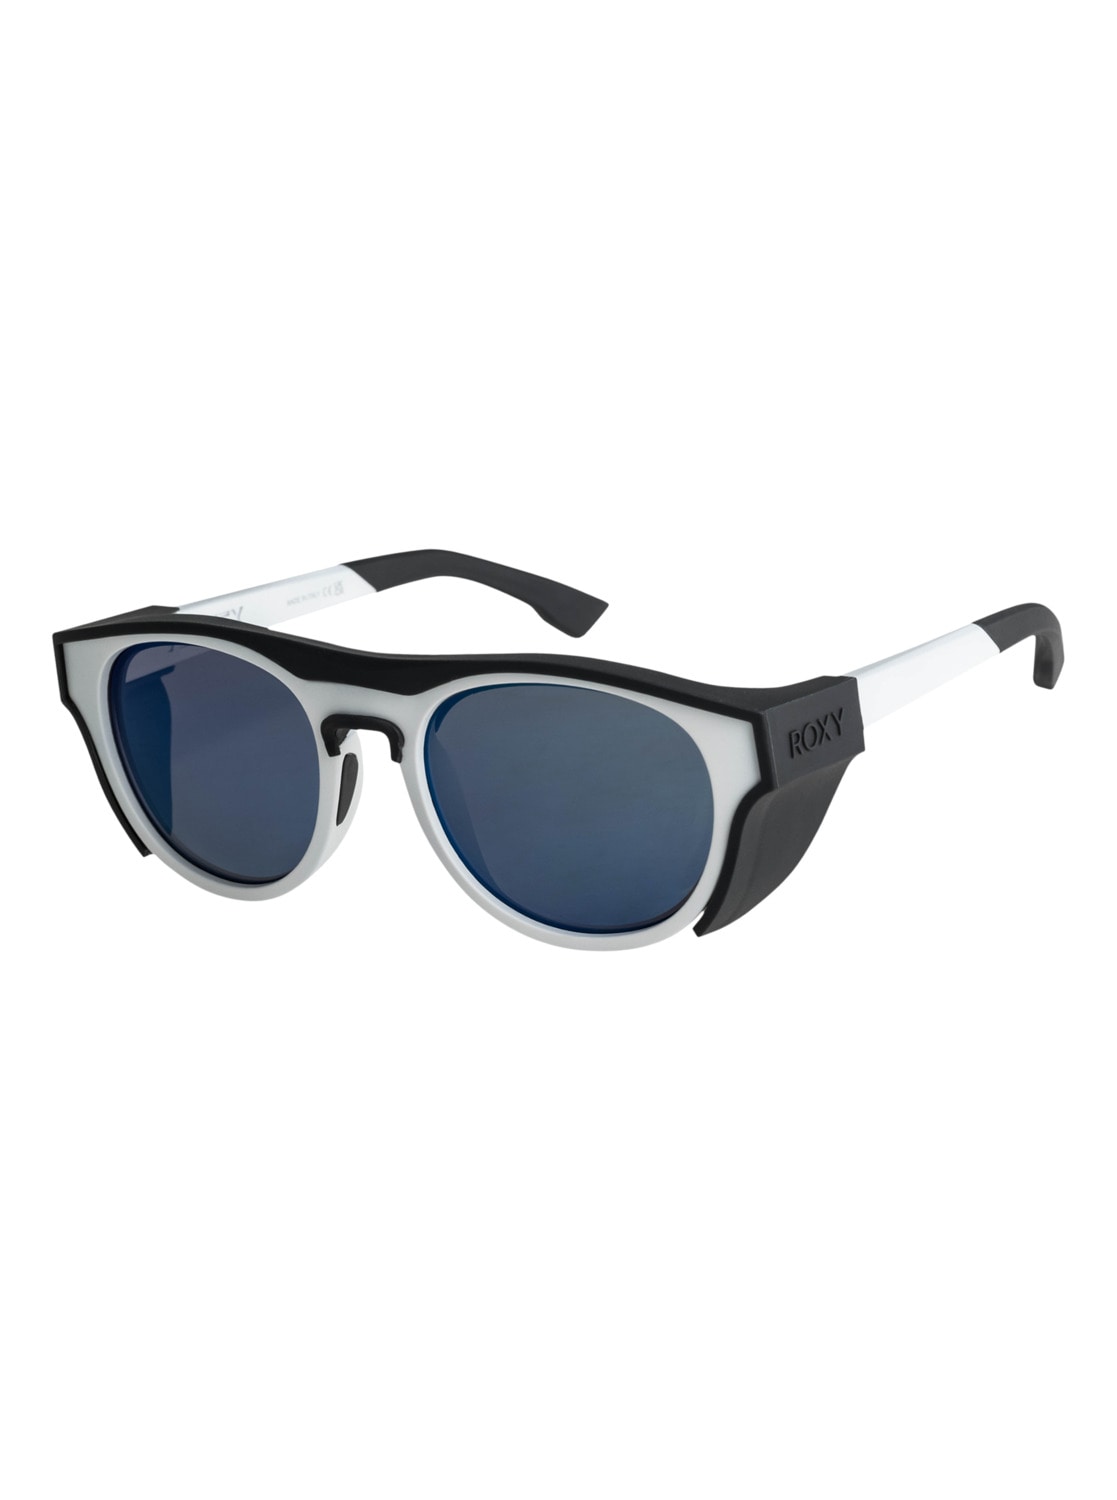 Sonnenbrillen Damen SALE & Outlet Angebote | günstige ▷ BAUR